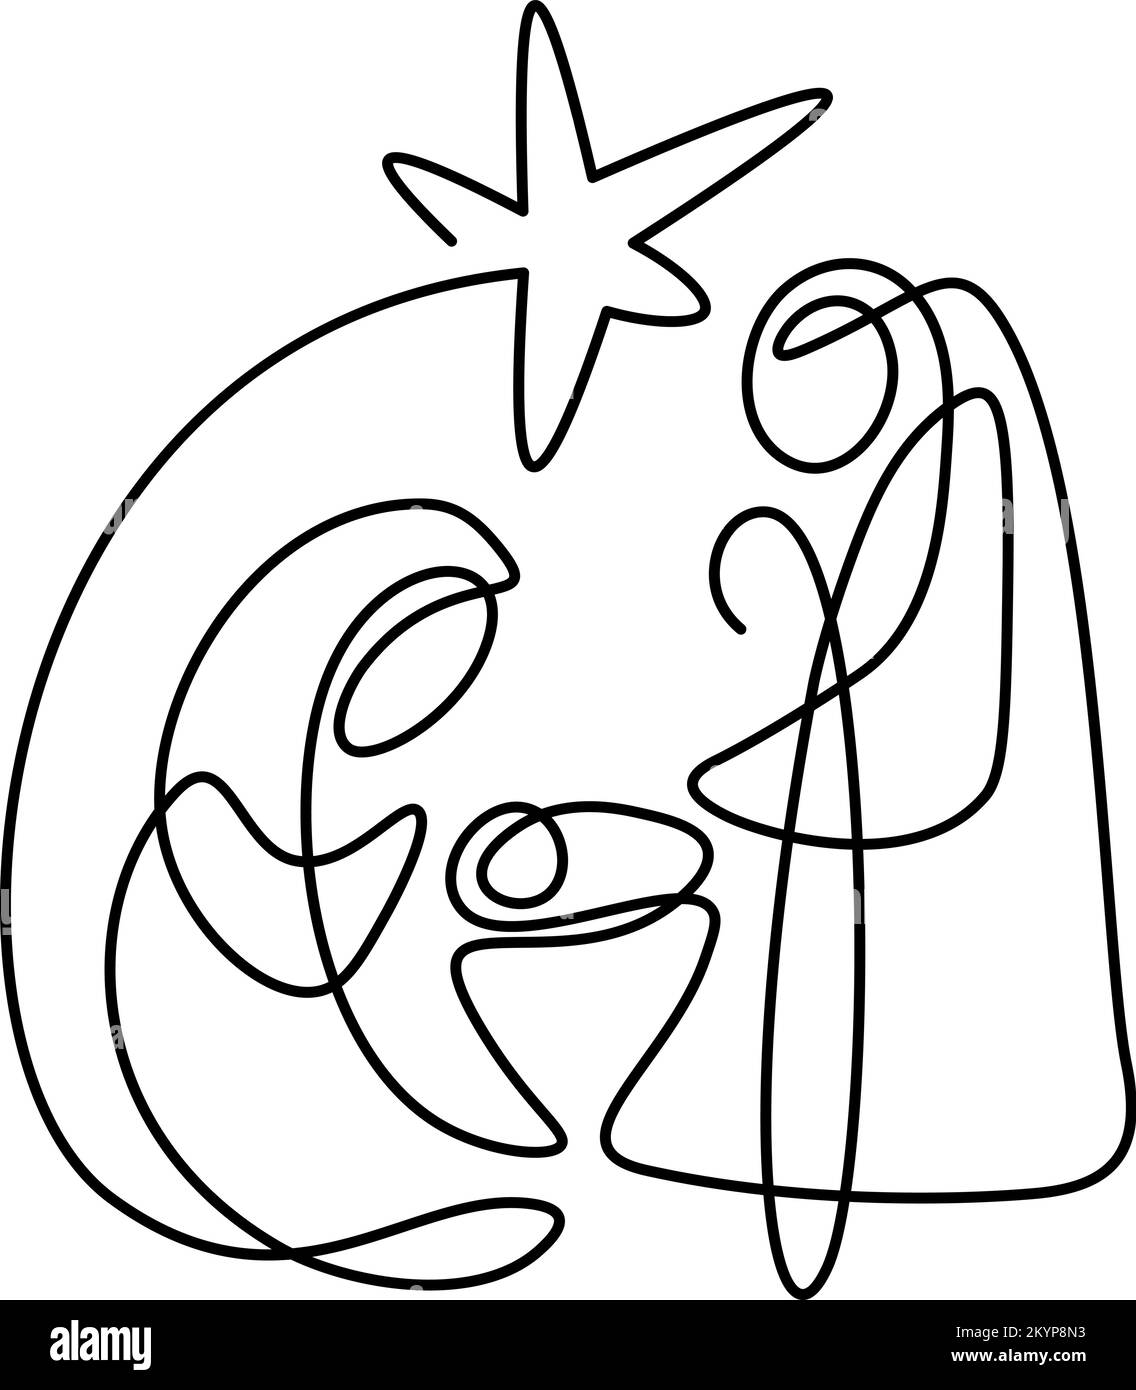 Vector de Navidad Icono Cristiano Natividad Religiosa Escena del bebé Jesús con María José y la estrella. Diseño continuo de dibujo, impresión y logotipo Ilustración del Vector